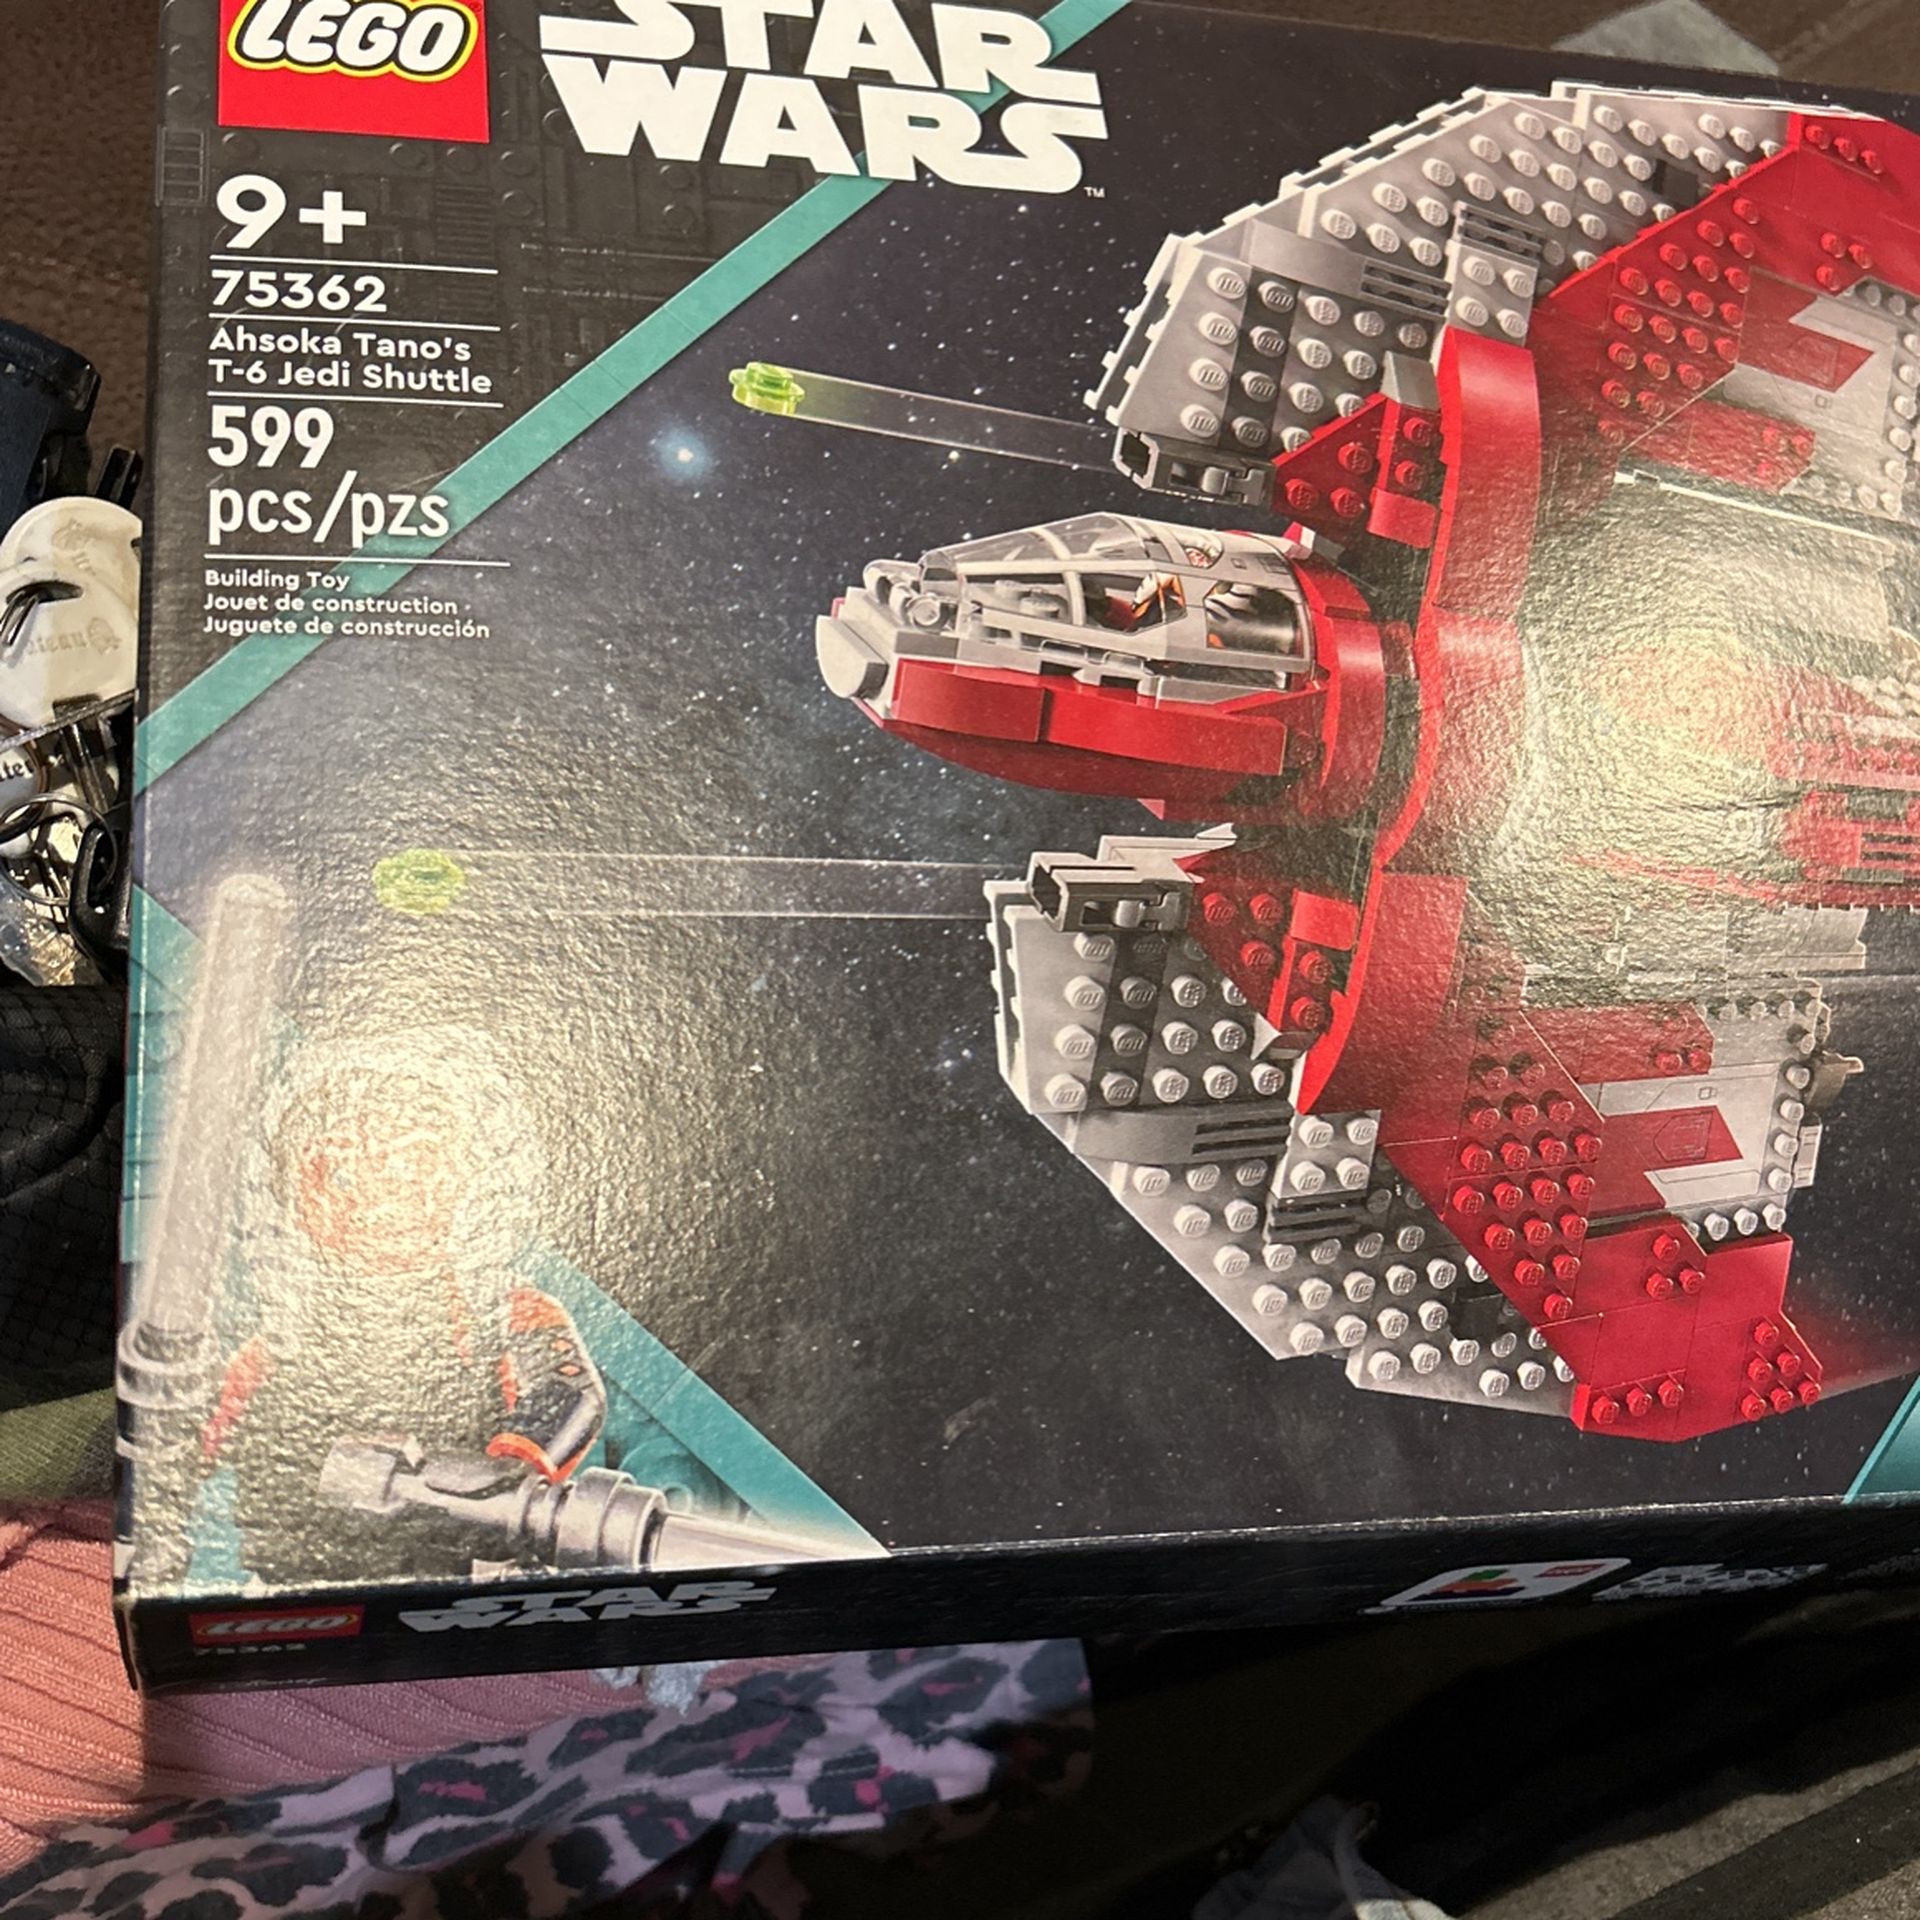 Lego star Wars (Ashoka Yano’s T-6 Jedi Shuttle)